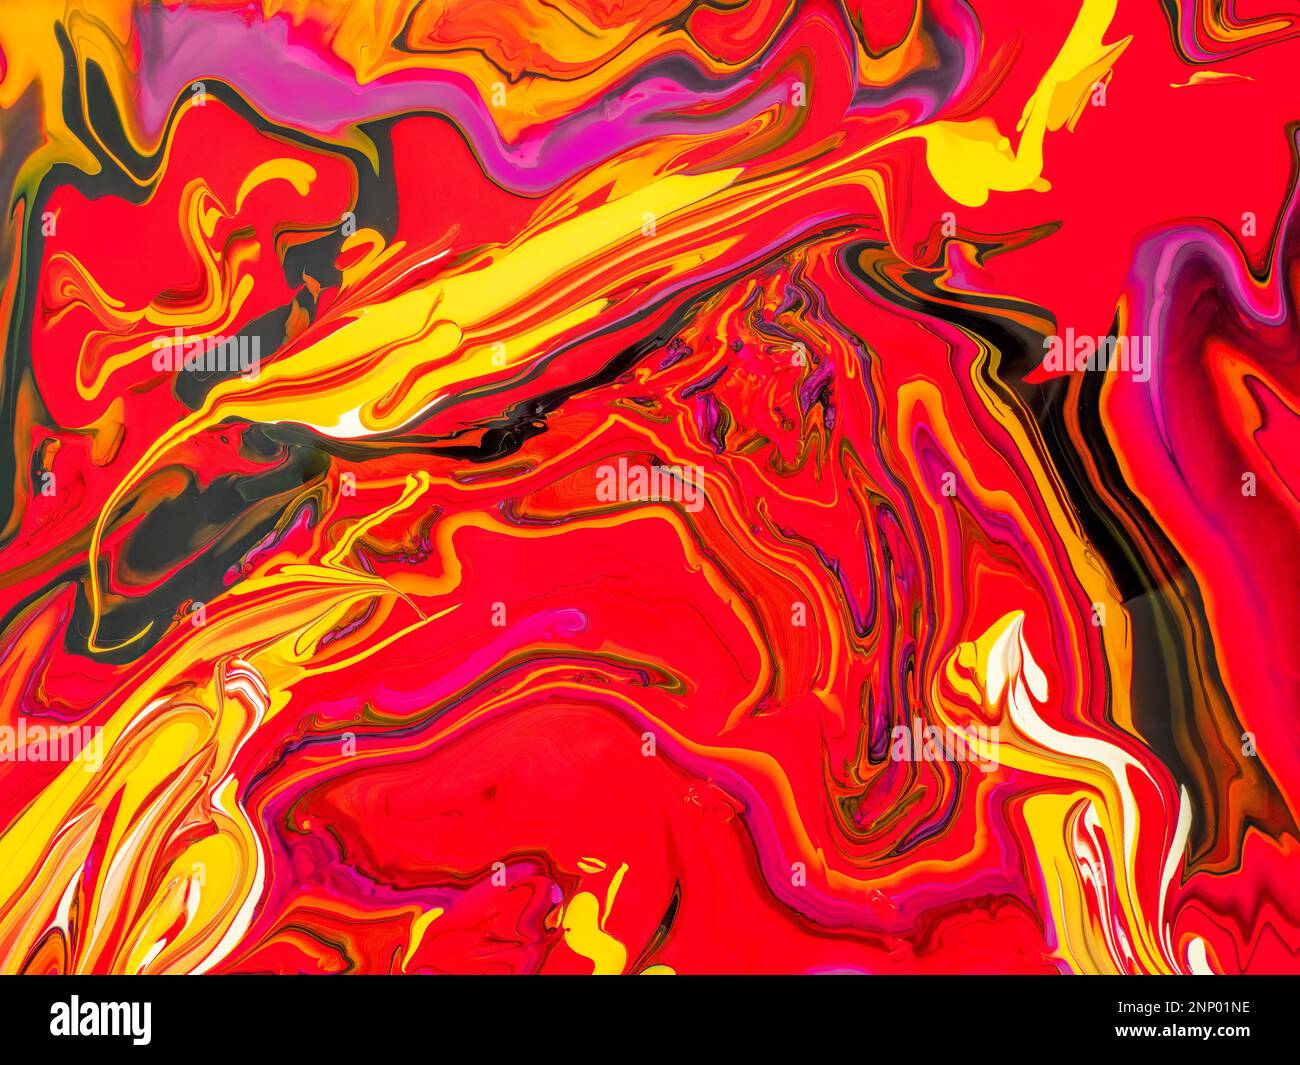 Immagine astratta di colori caldi misti di vernice acrilica Foto Stock